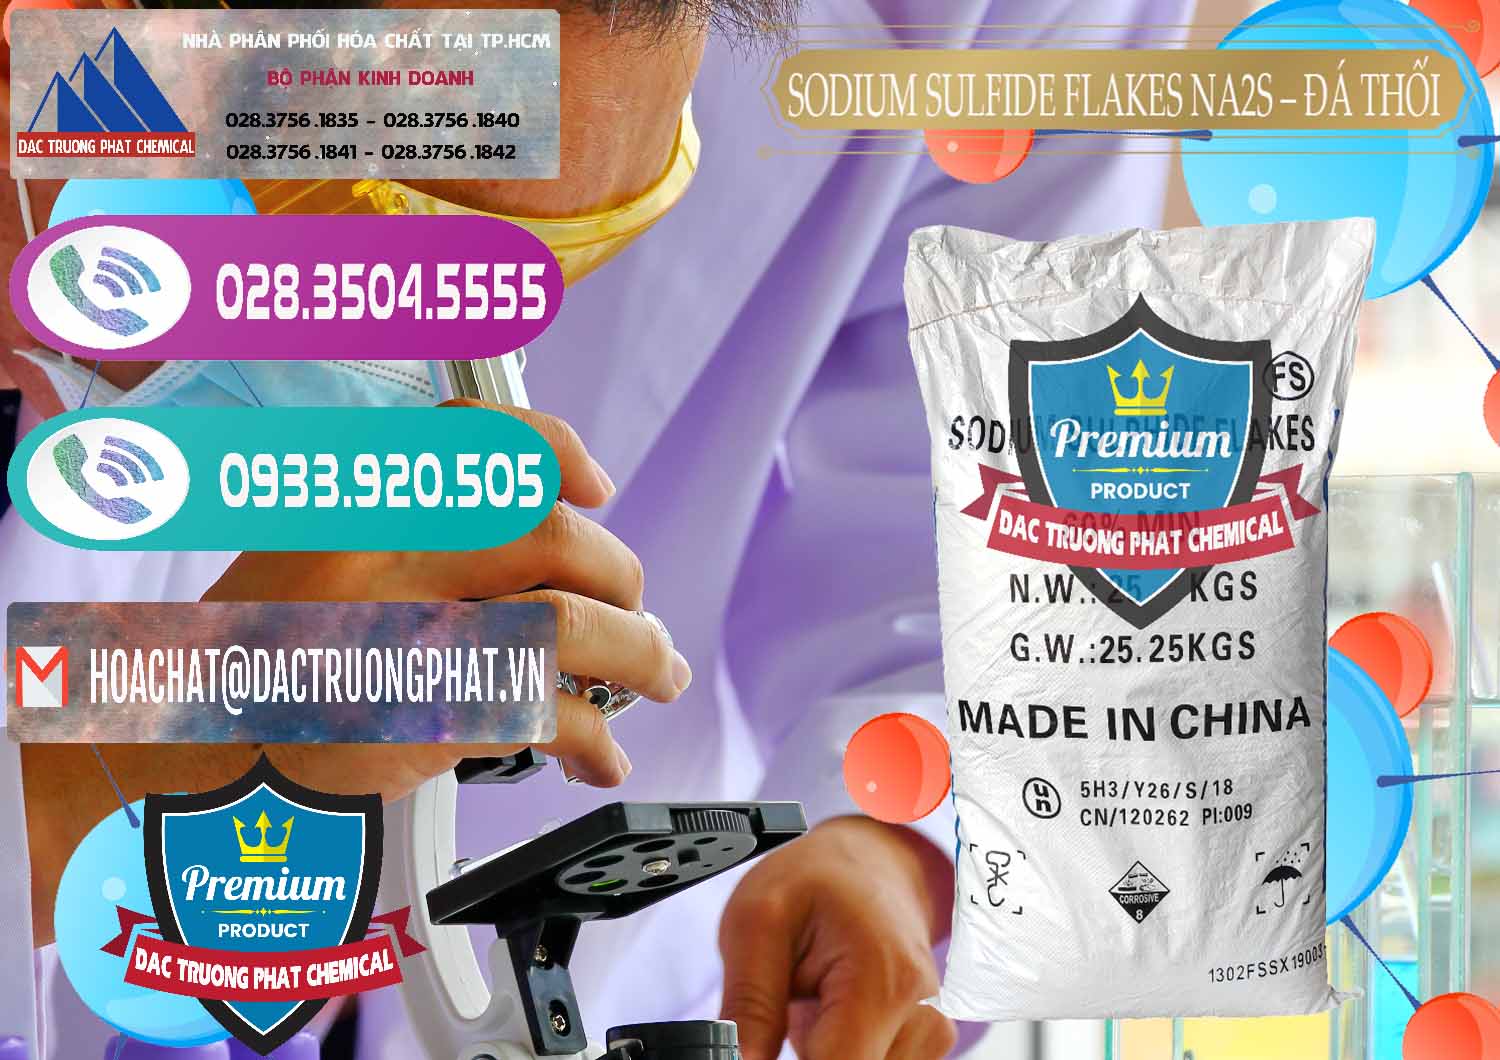 Cty chuyên bán _ phân phối Sodium Sulfide Flakes NA2S – Đá Thối Đỏ Trung Quốc China - 0150 - Cty cung cấp - kinh doanh hóa chất tại TP.HCM - hoachatxulynuoc.com